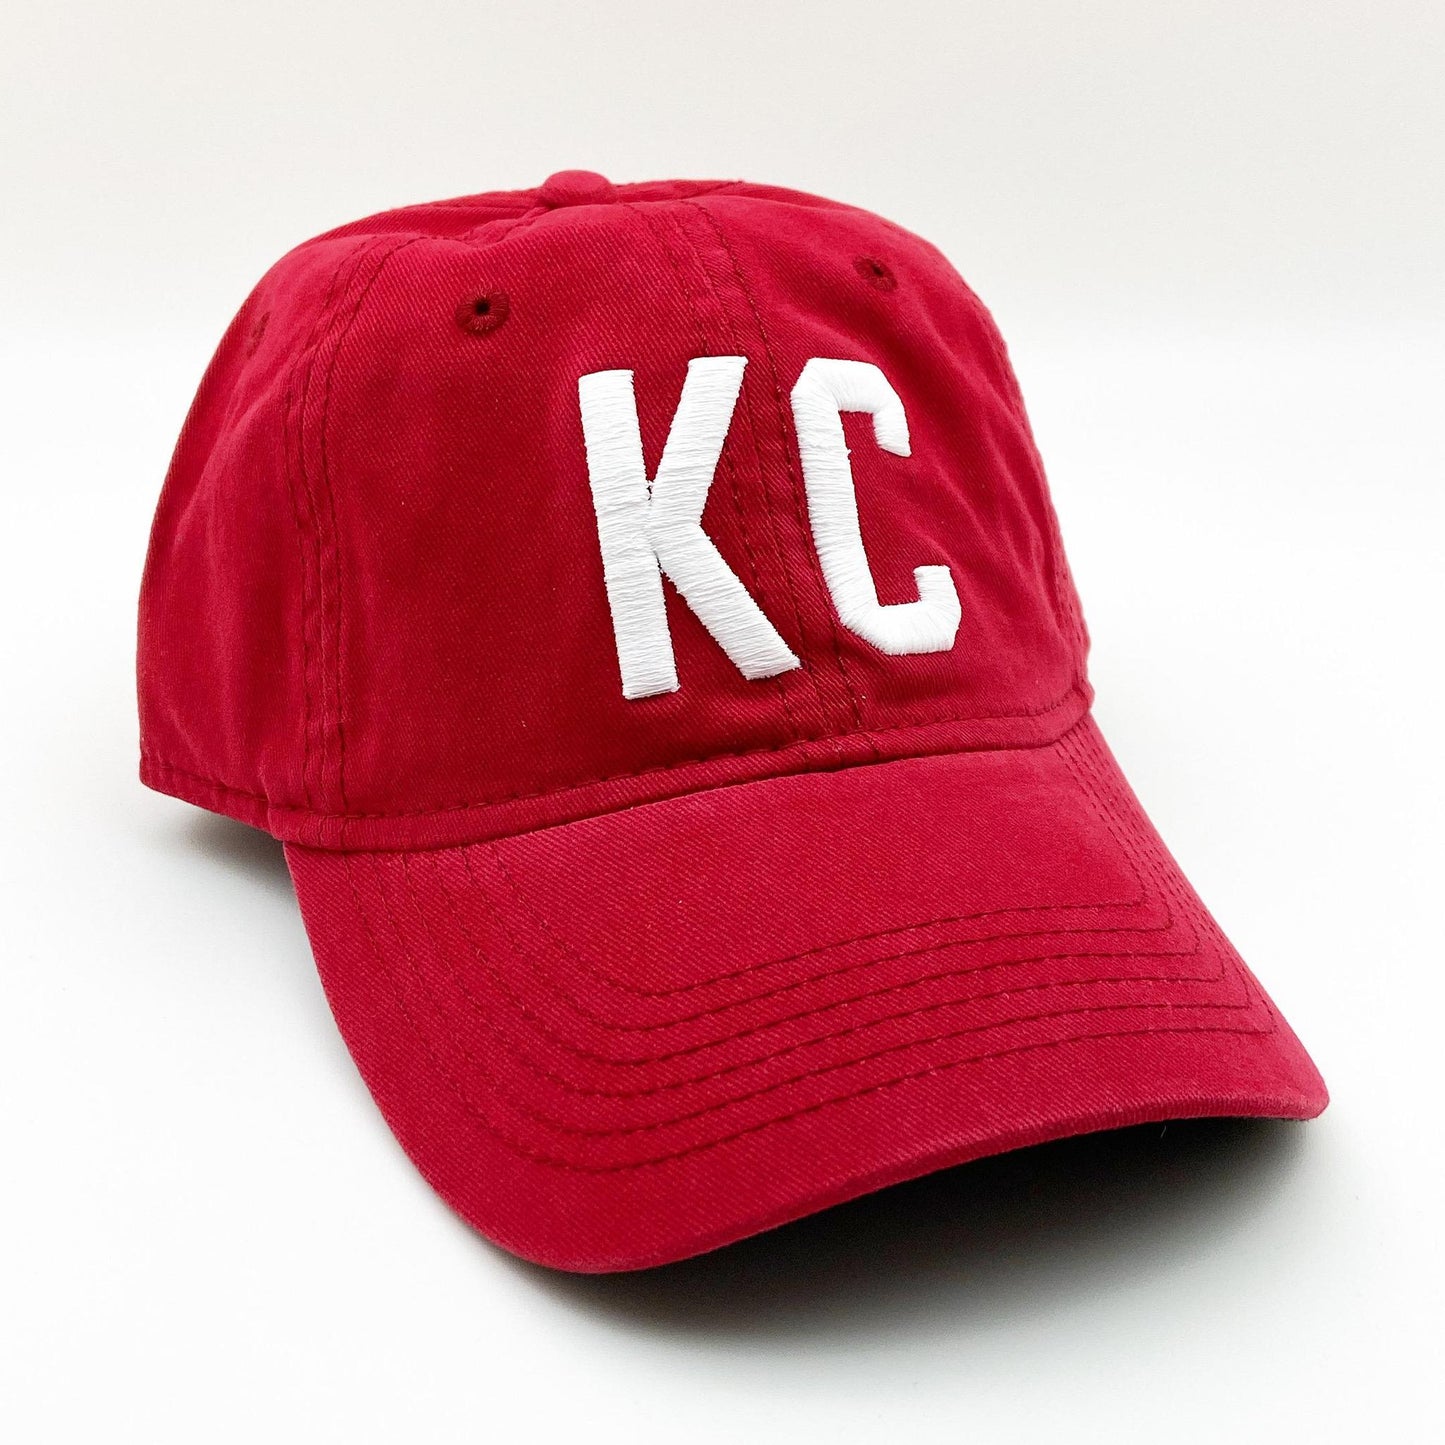 Ballcap - KC - White on Red